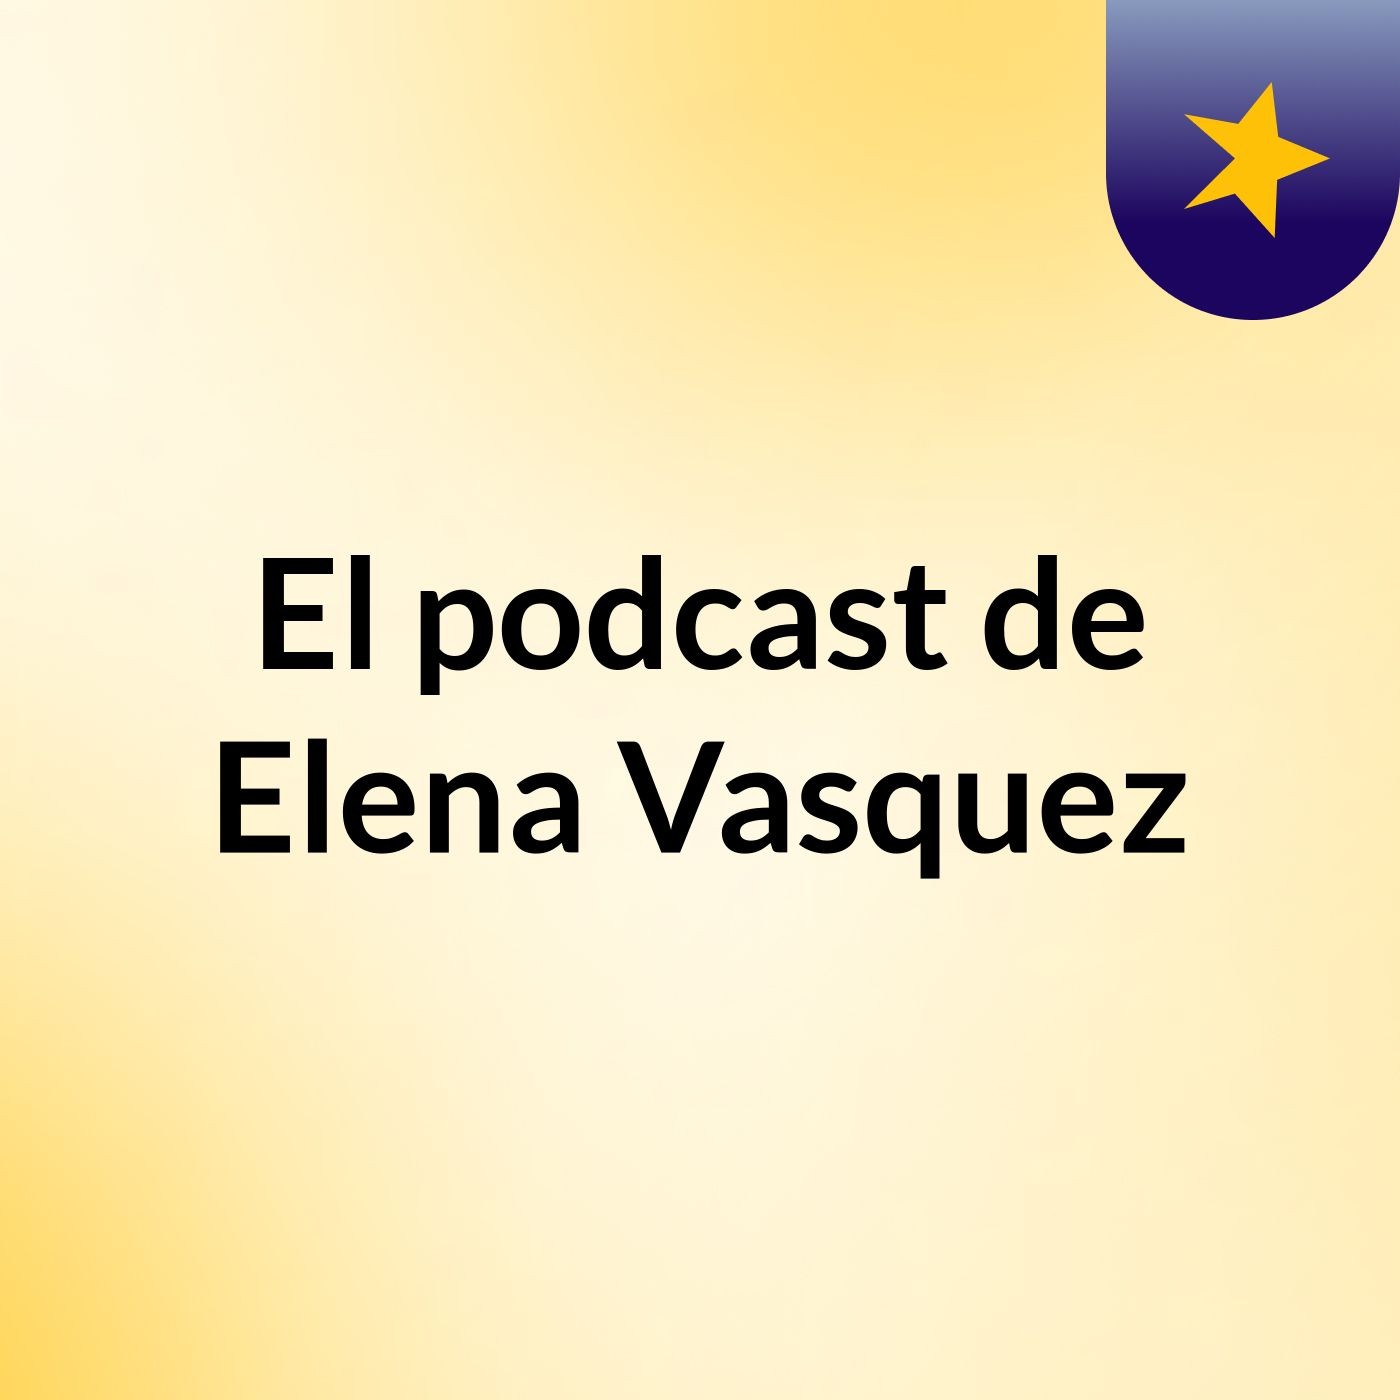 El podcast de Elena Vasquez